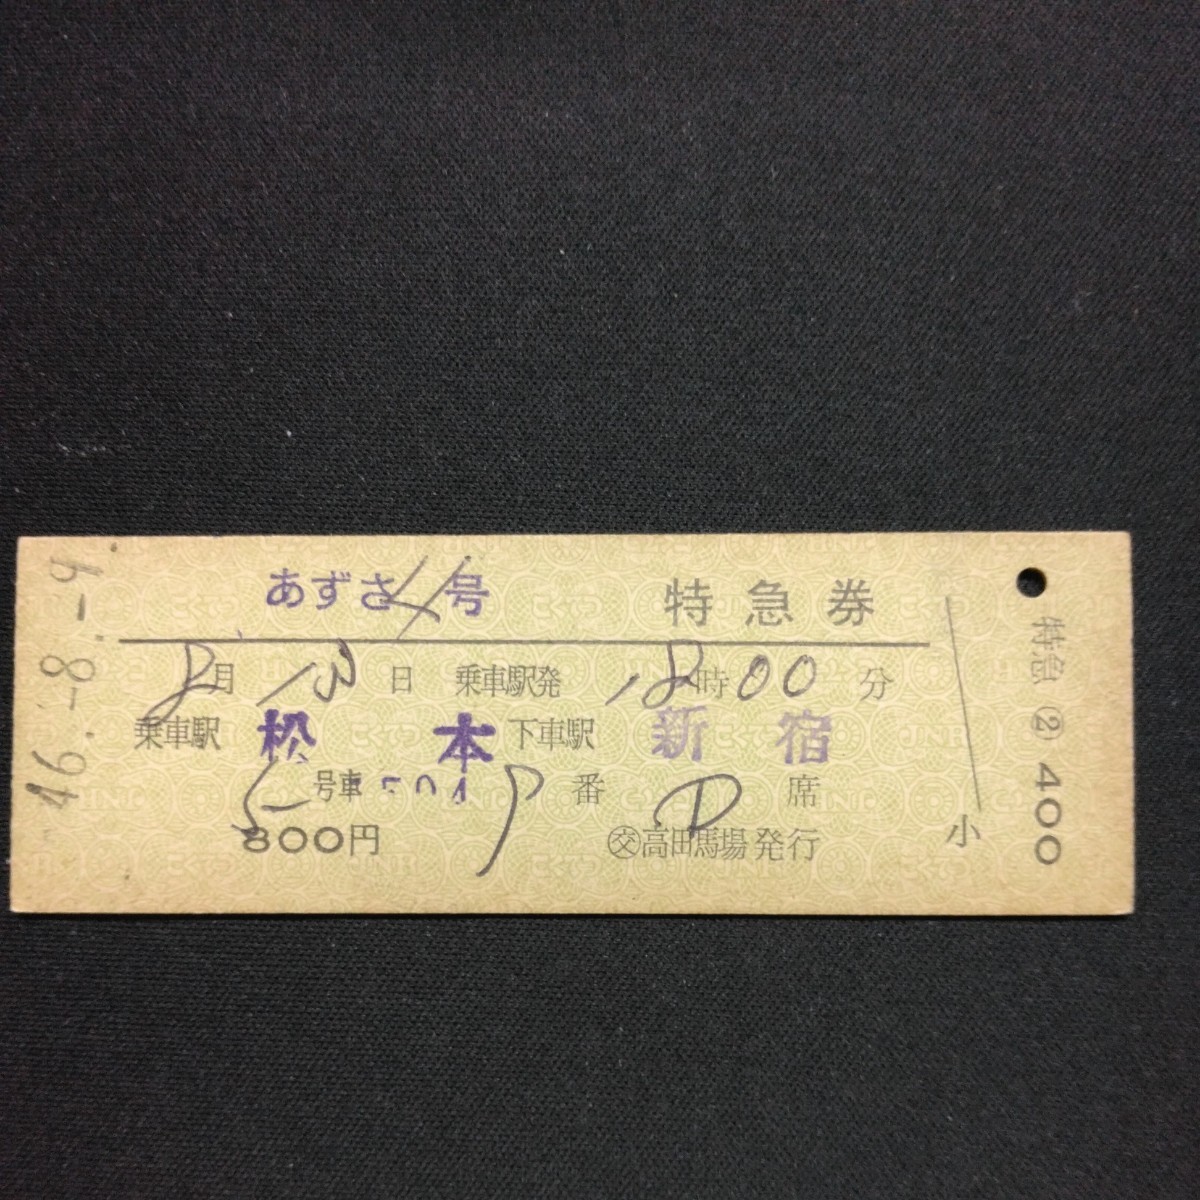 【0194】あずさ 特急券 松本 新宿 国鉄 古い切符 D型 硬券_画像1